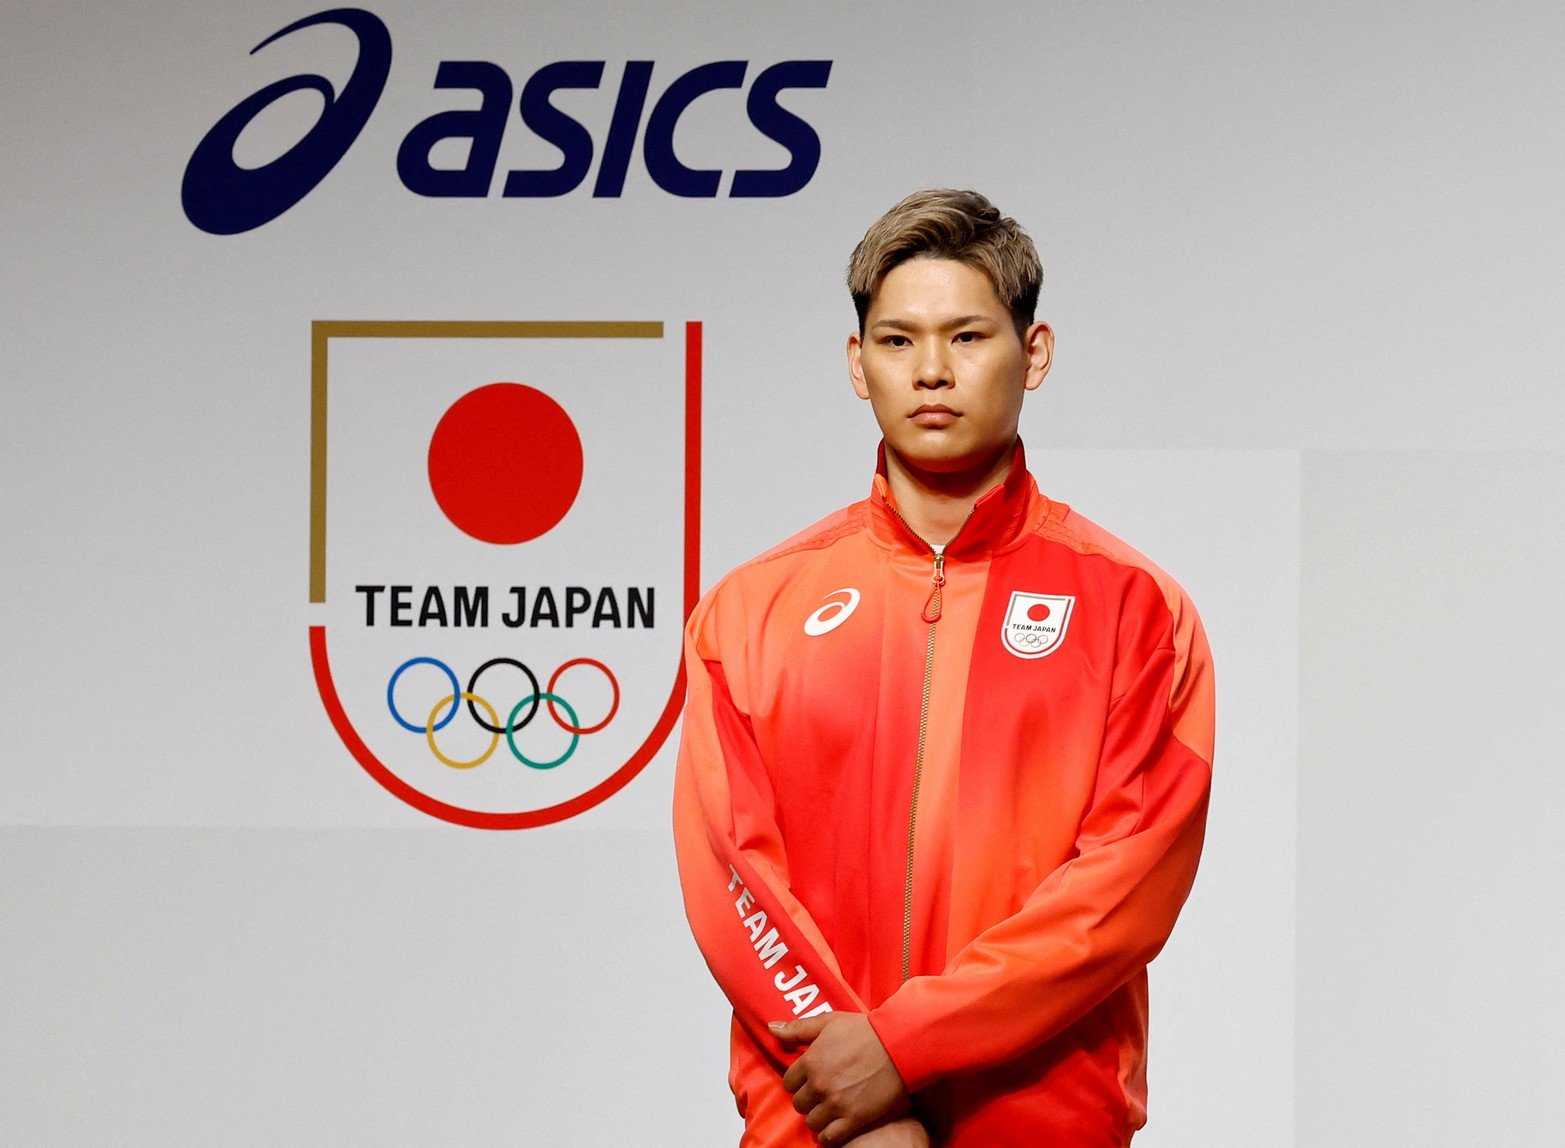 El jugador de voleibol japonés Yuji Nishida asiste a una ceremonia de inauguración de uniformes oficiales para los Juegos Olímpicos y Paralímpicos de París en Tokio, Japón.